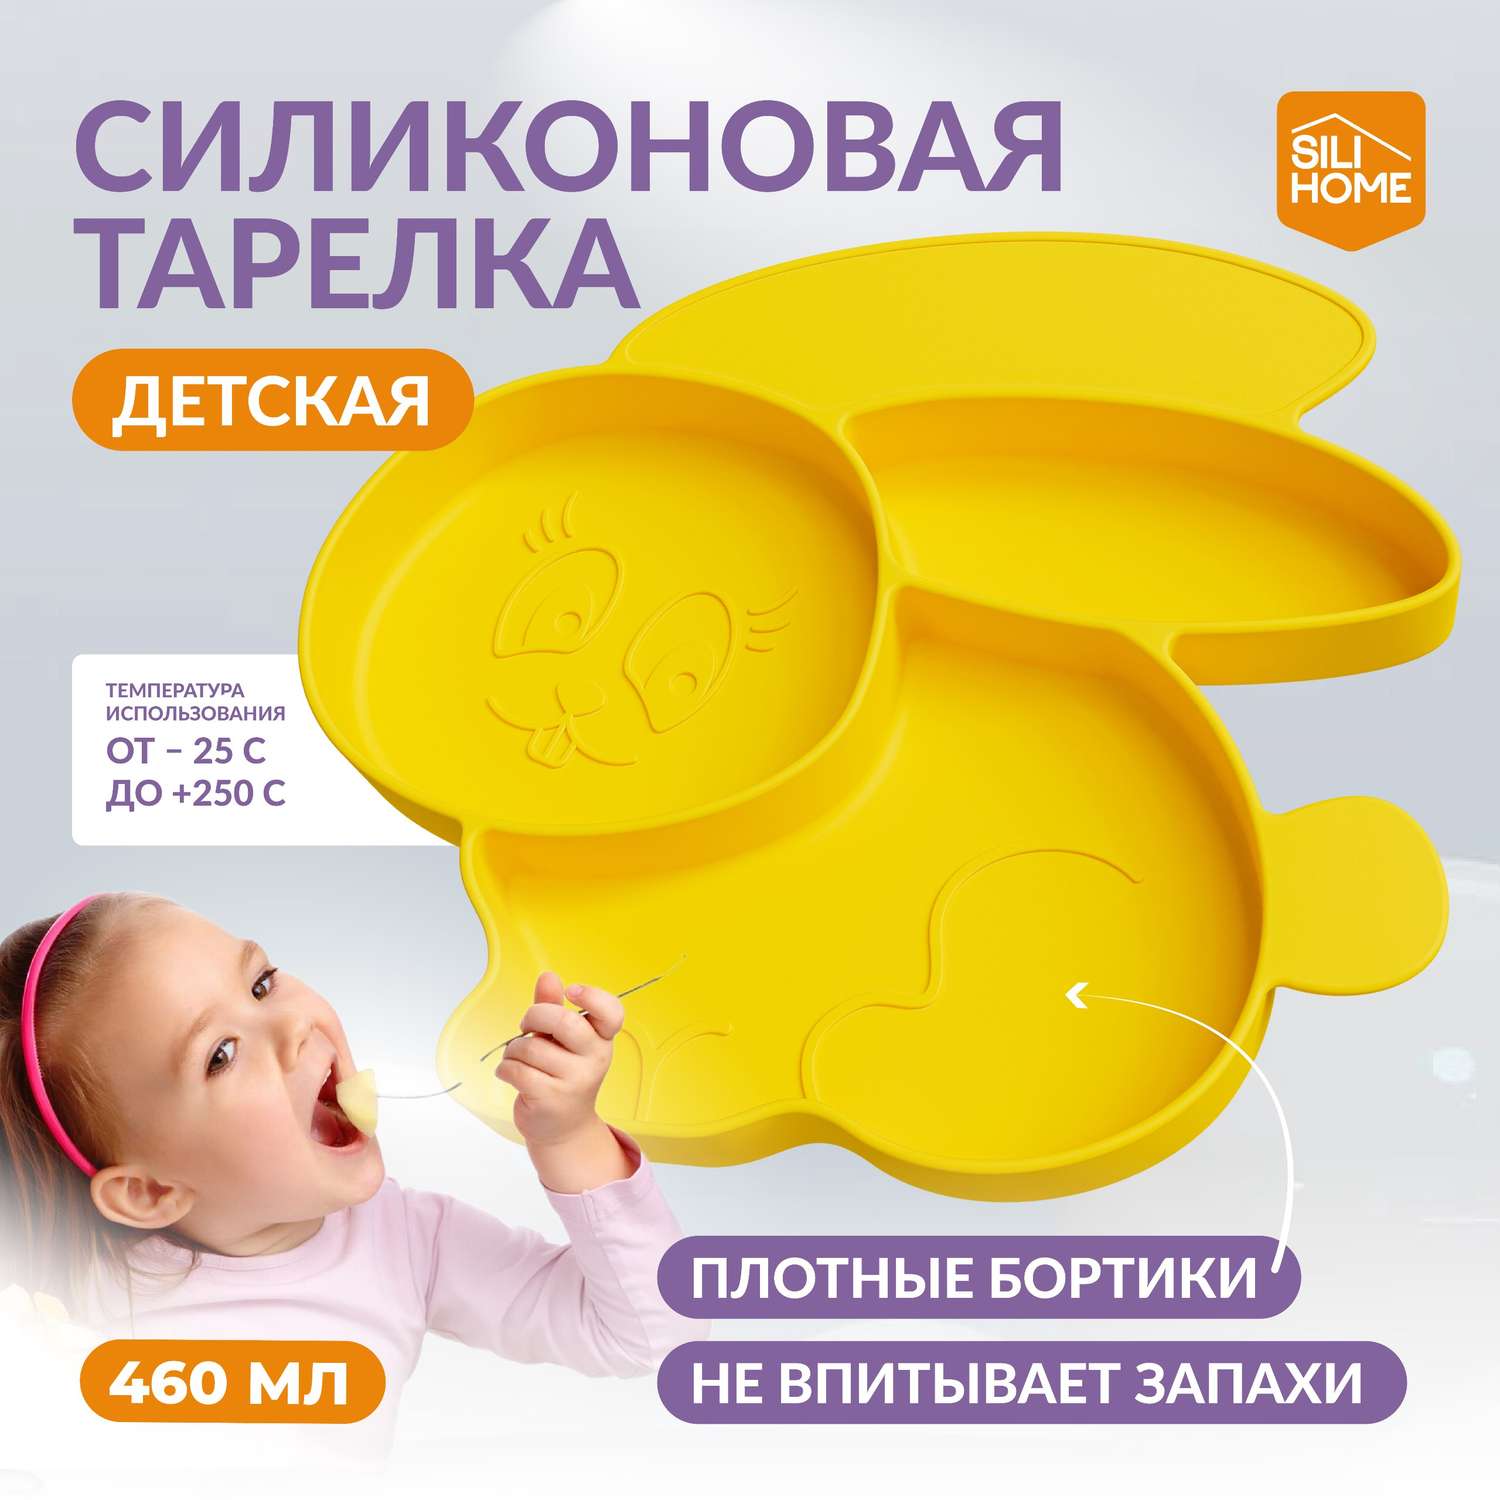 Детская силиконовая тарелка SILIHOME Зайка 460 мл секционная - фото 1